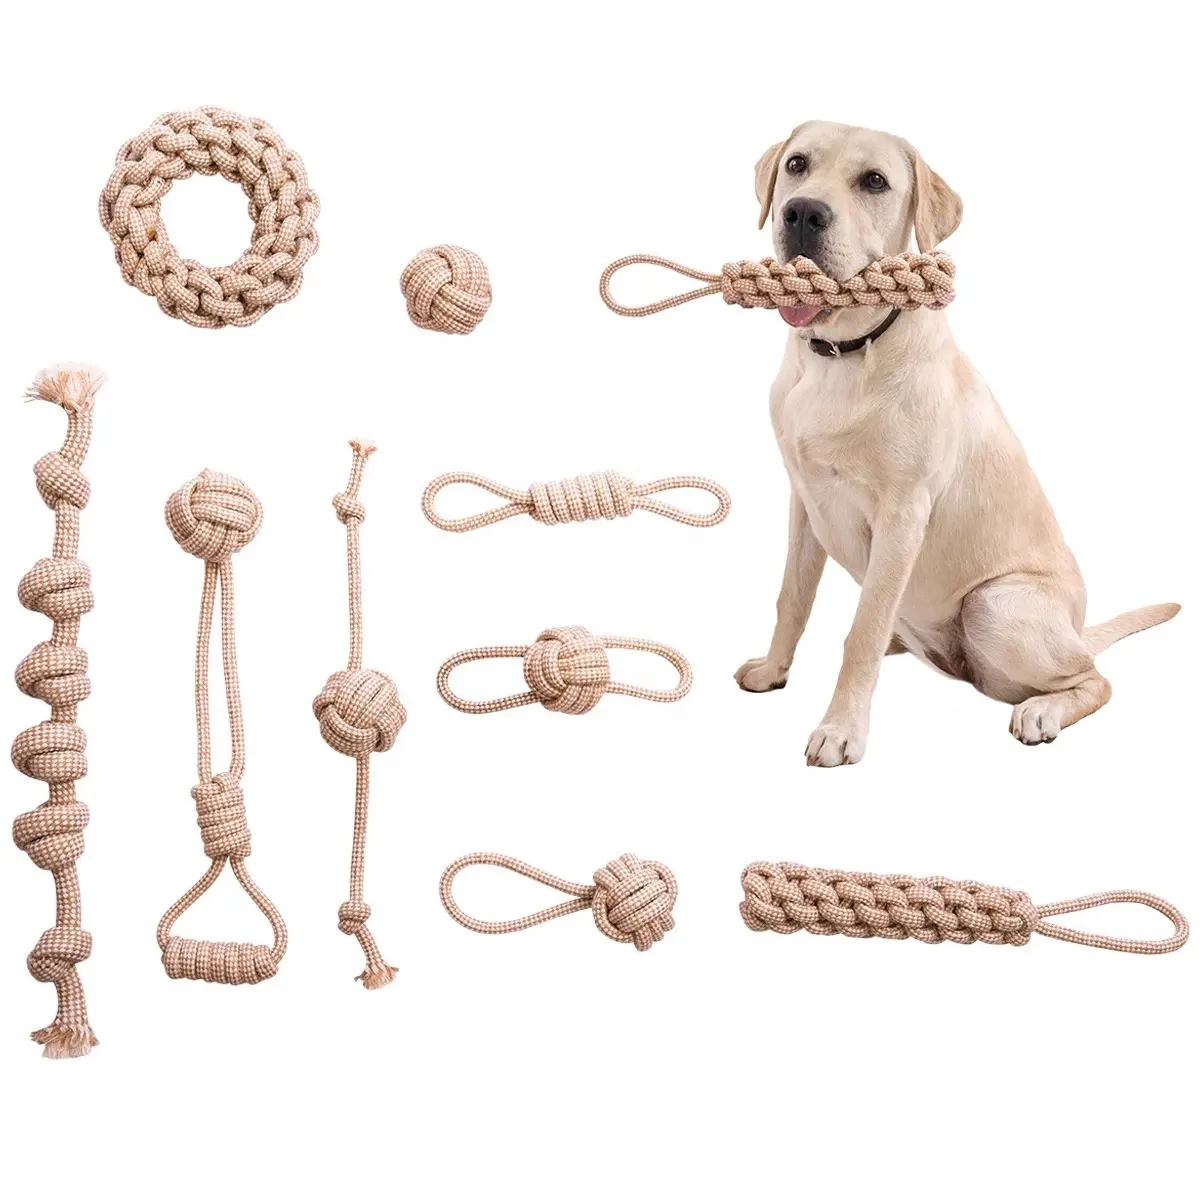 Juego múltiple de cuerda de cáñamo Natural gris ecológico, juguete para perros, accesorios interactivos duraderos para mascotas, cuerda de algodón, juego de juguetes para perros de cáñamo